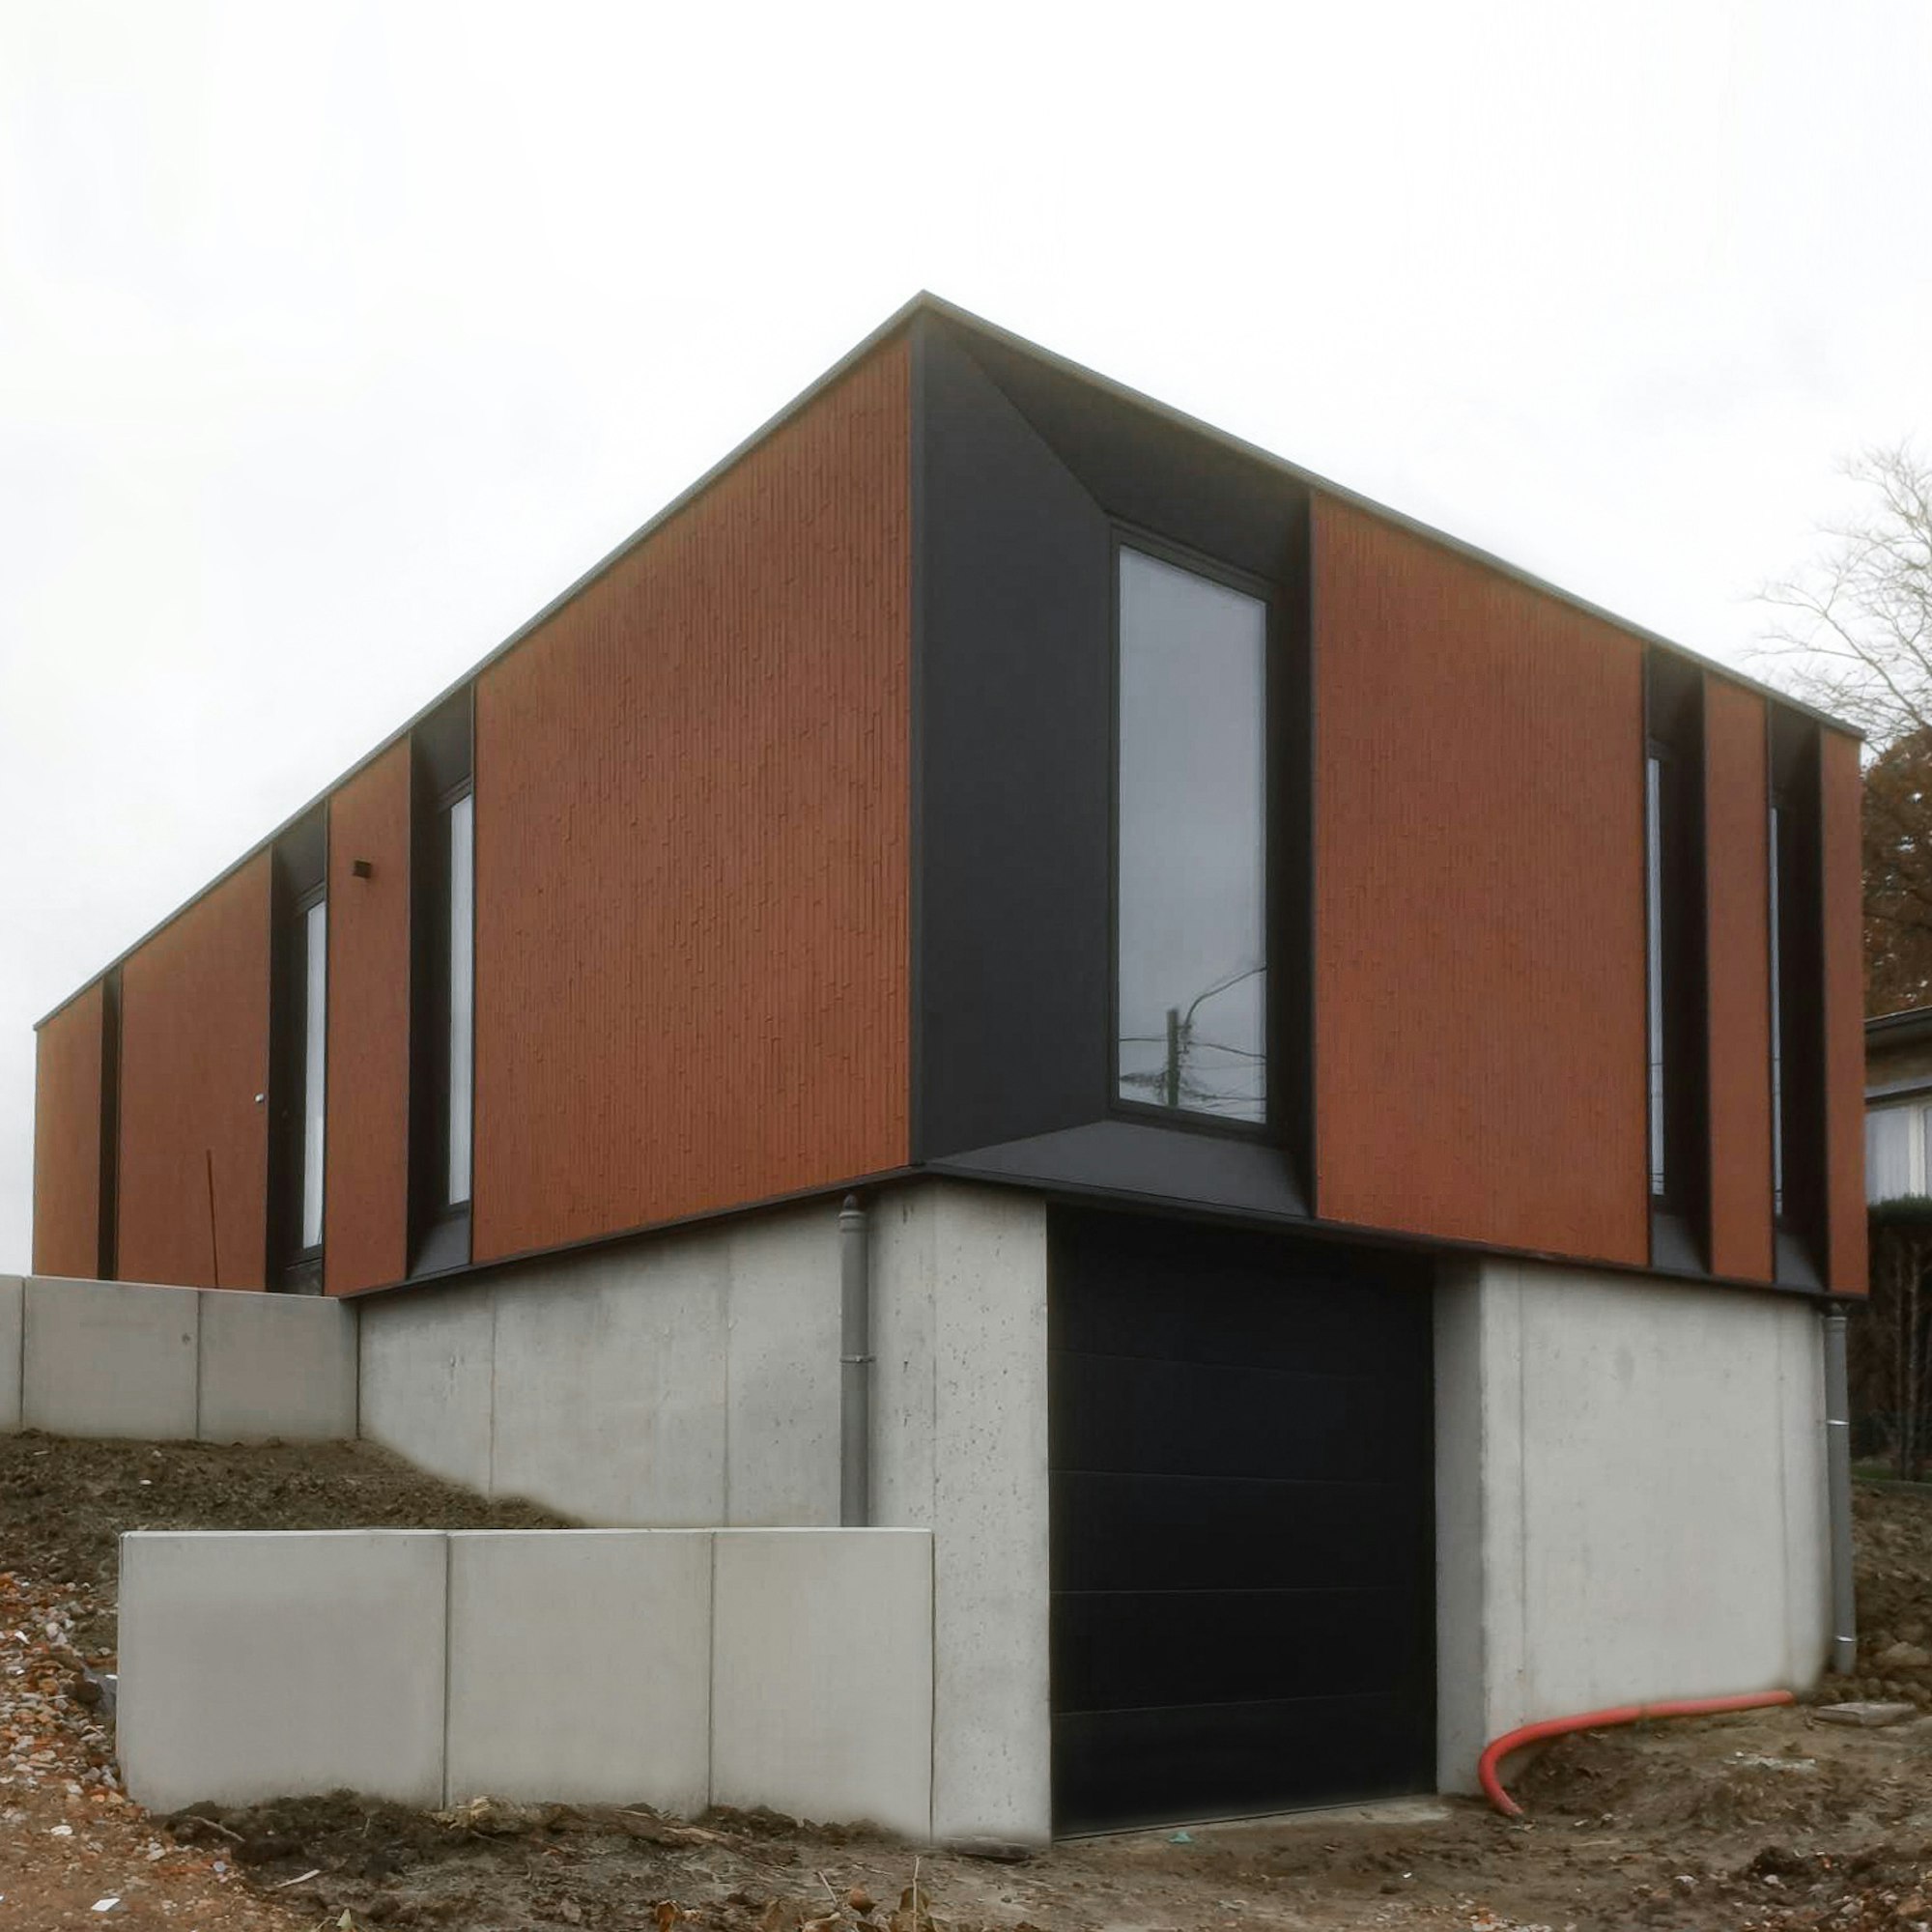 Houtskeletbouw woning Skilpod #100 op kelder met garage, modern design afgewerkt met rode steen